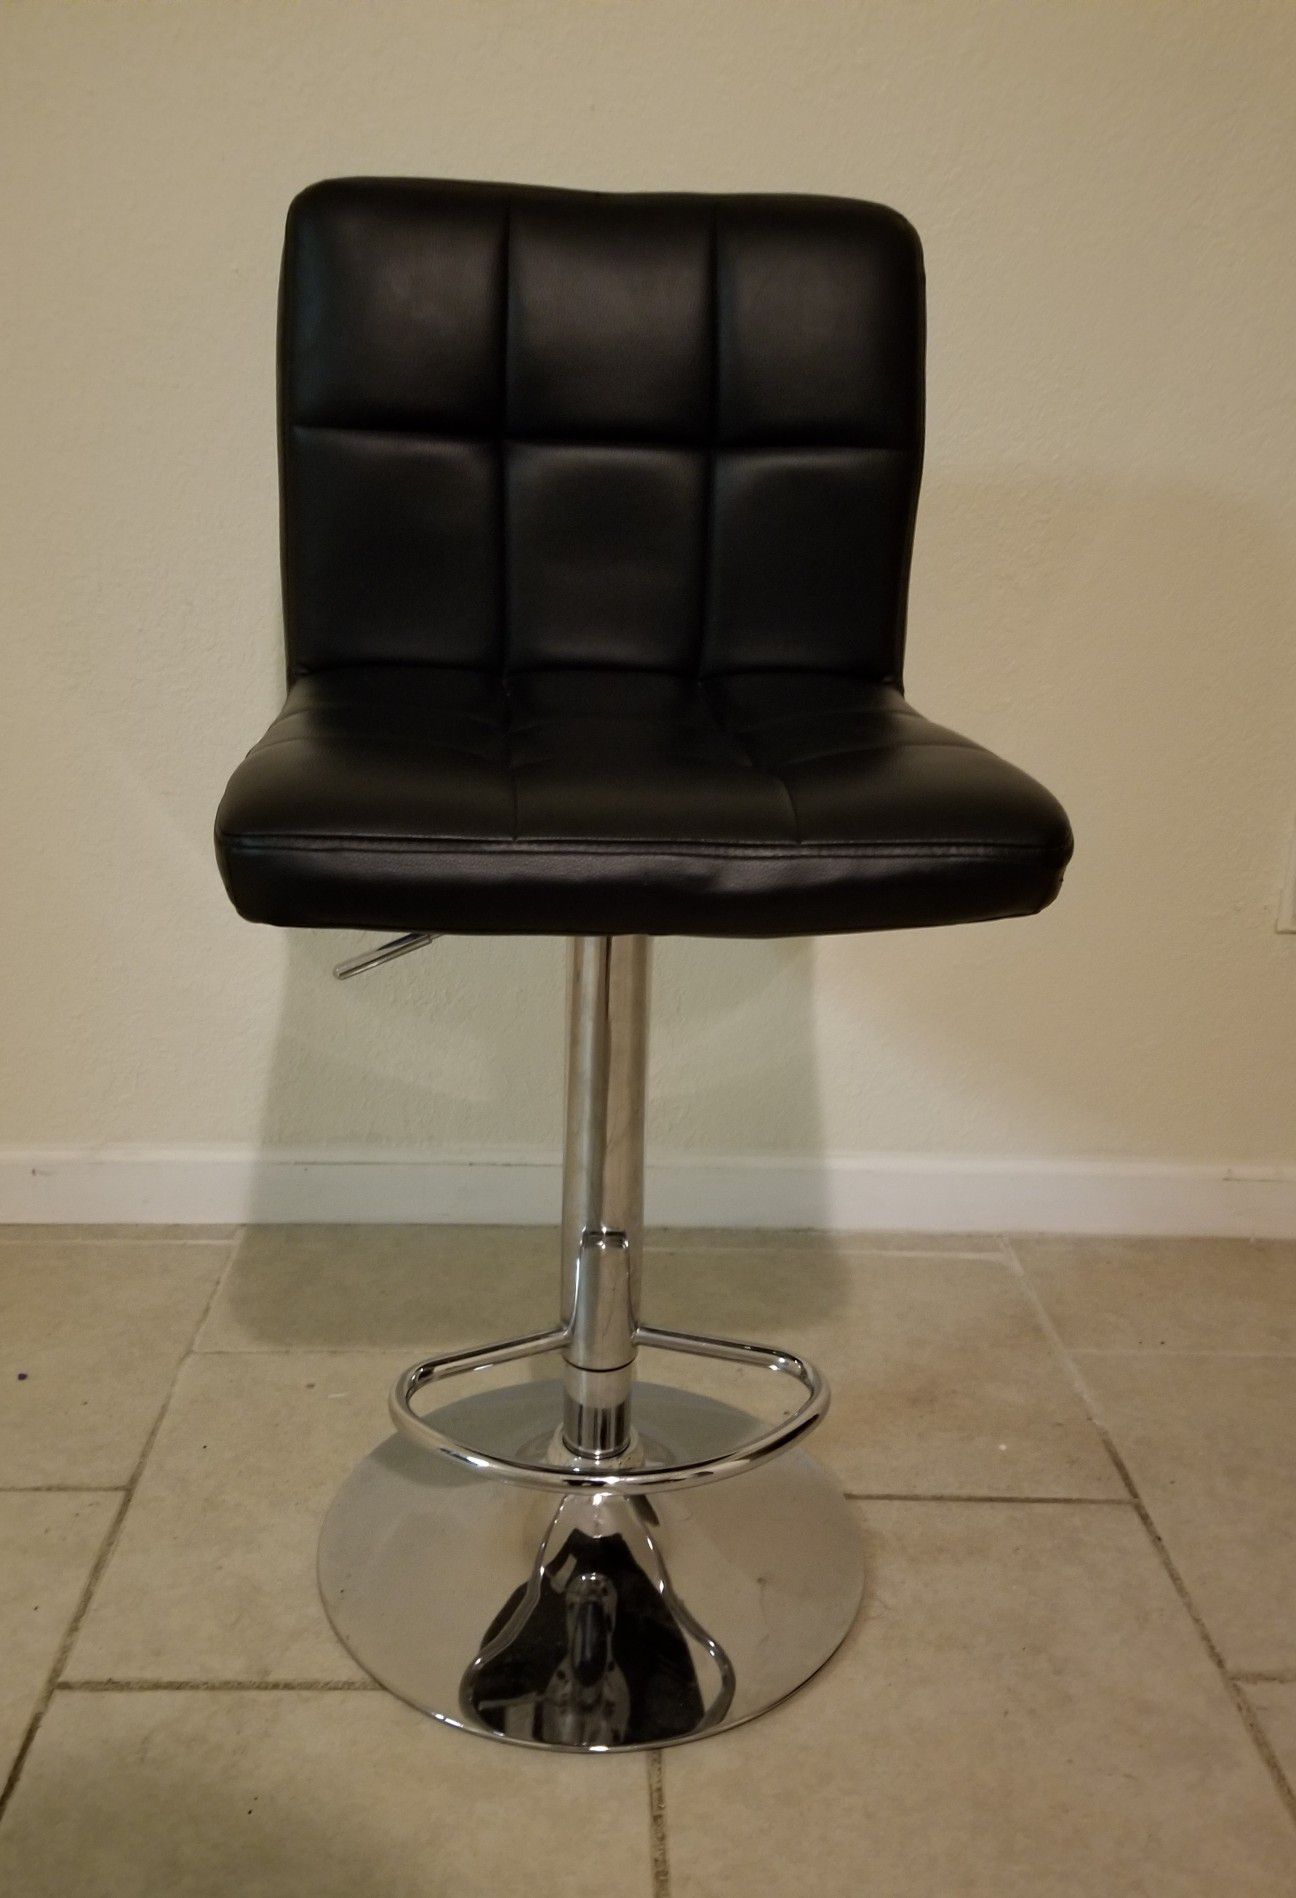 Vanity chair